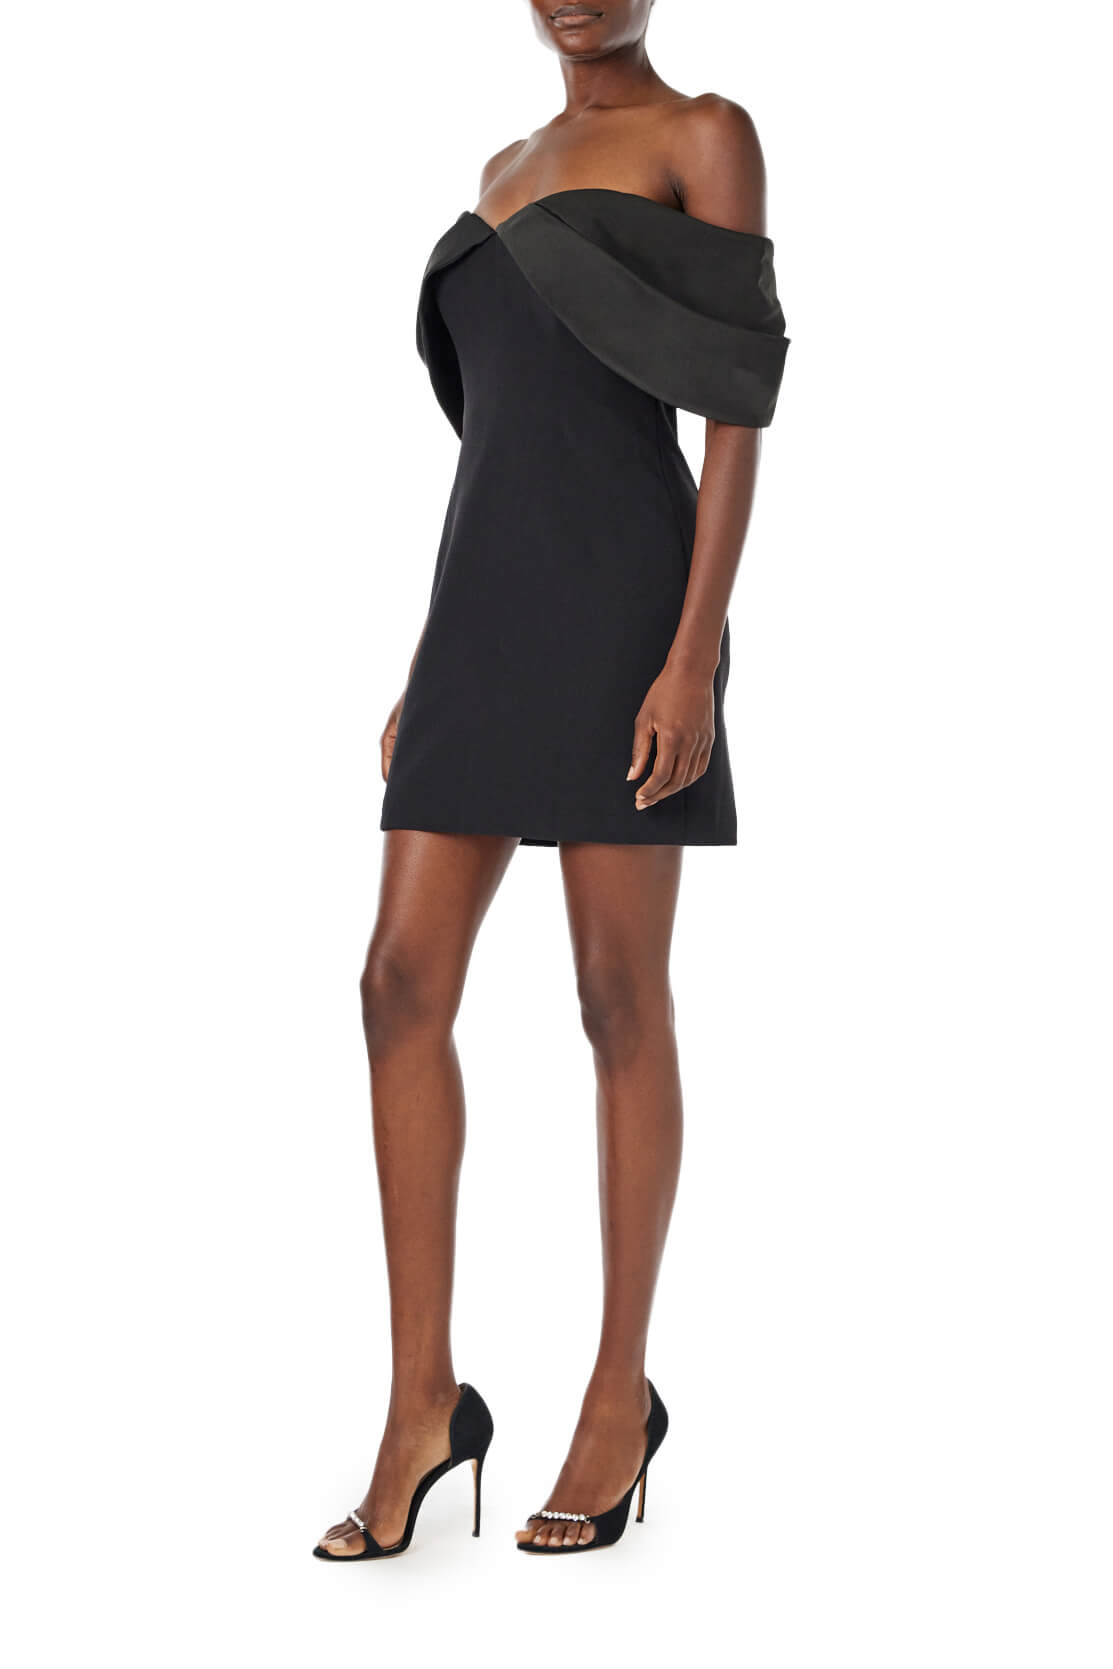 ML Monique Lhuillier black crepe mini dress with an off the shoulder neckline.